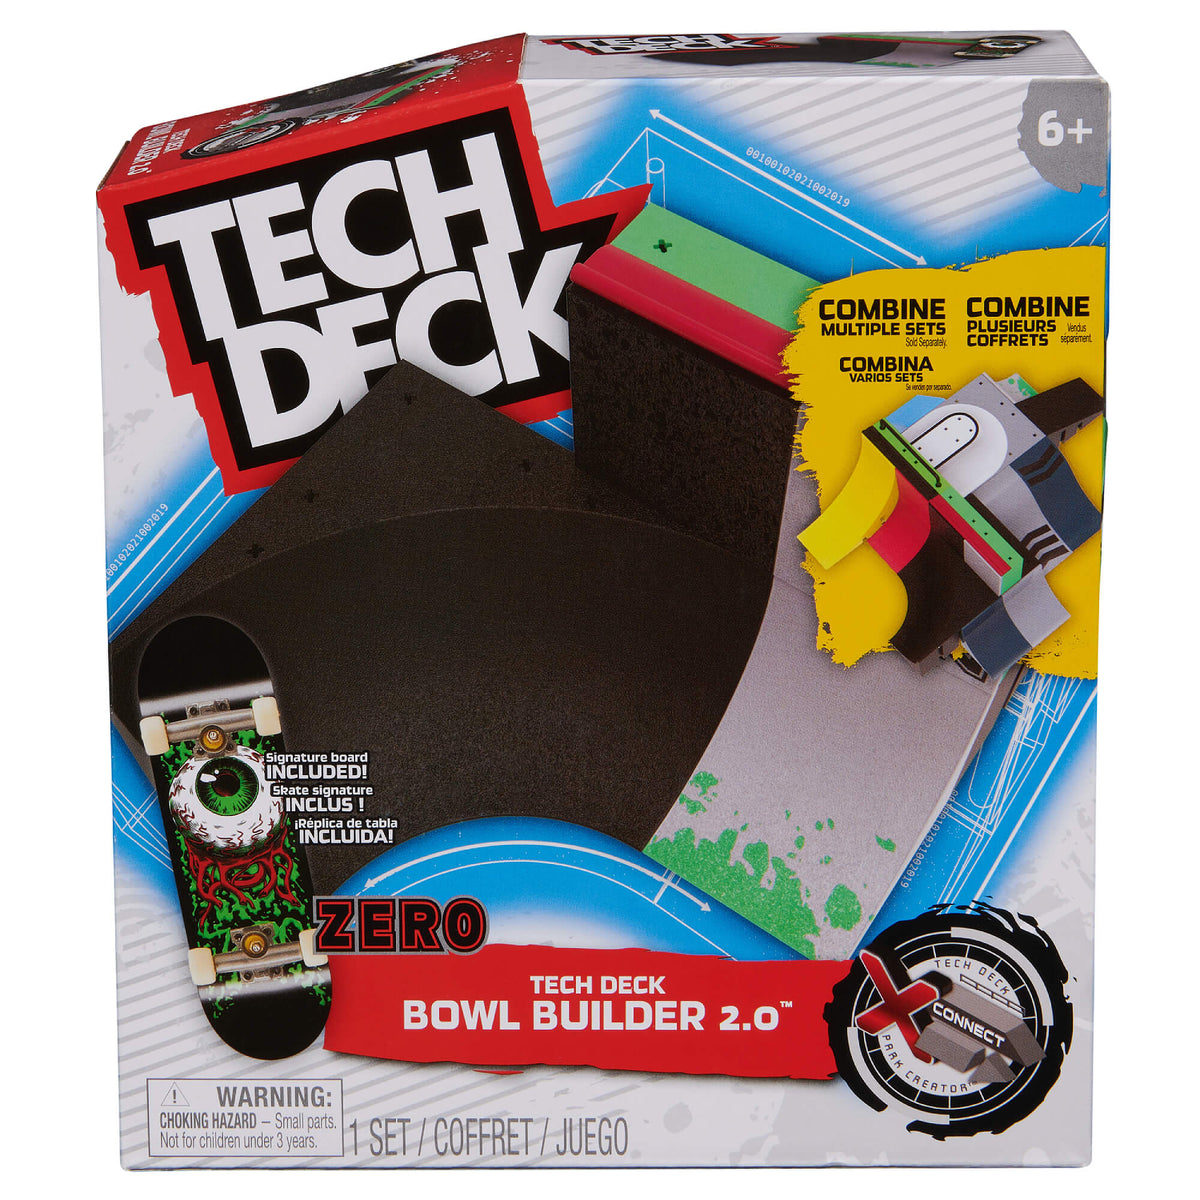 Tech Deck Fingerboard Bowl Builder 2.0